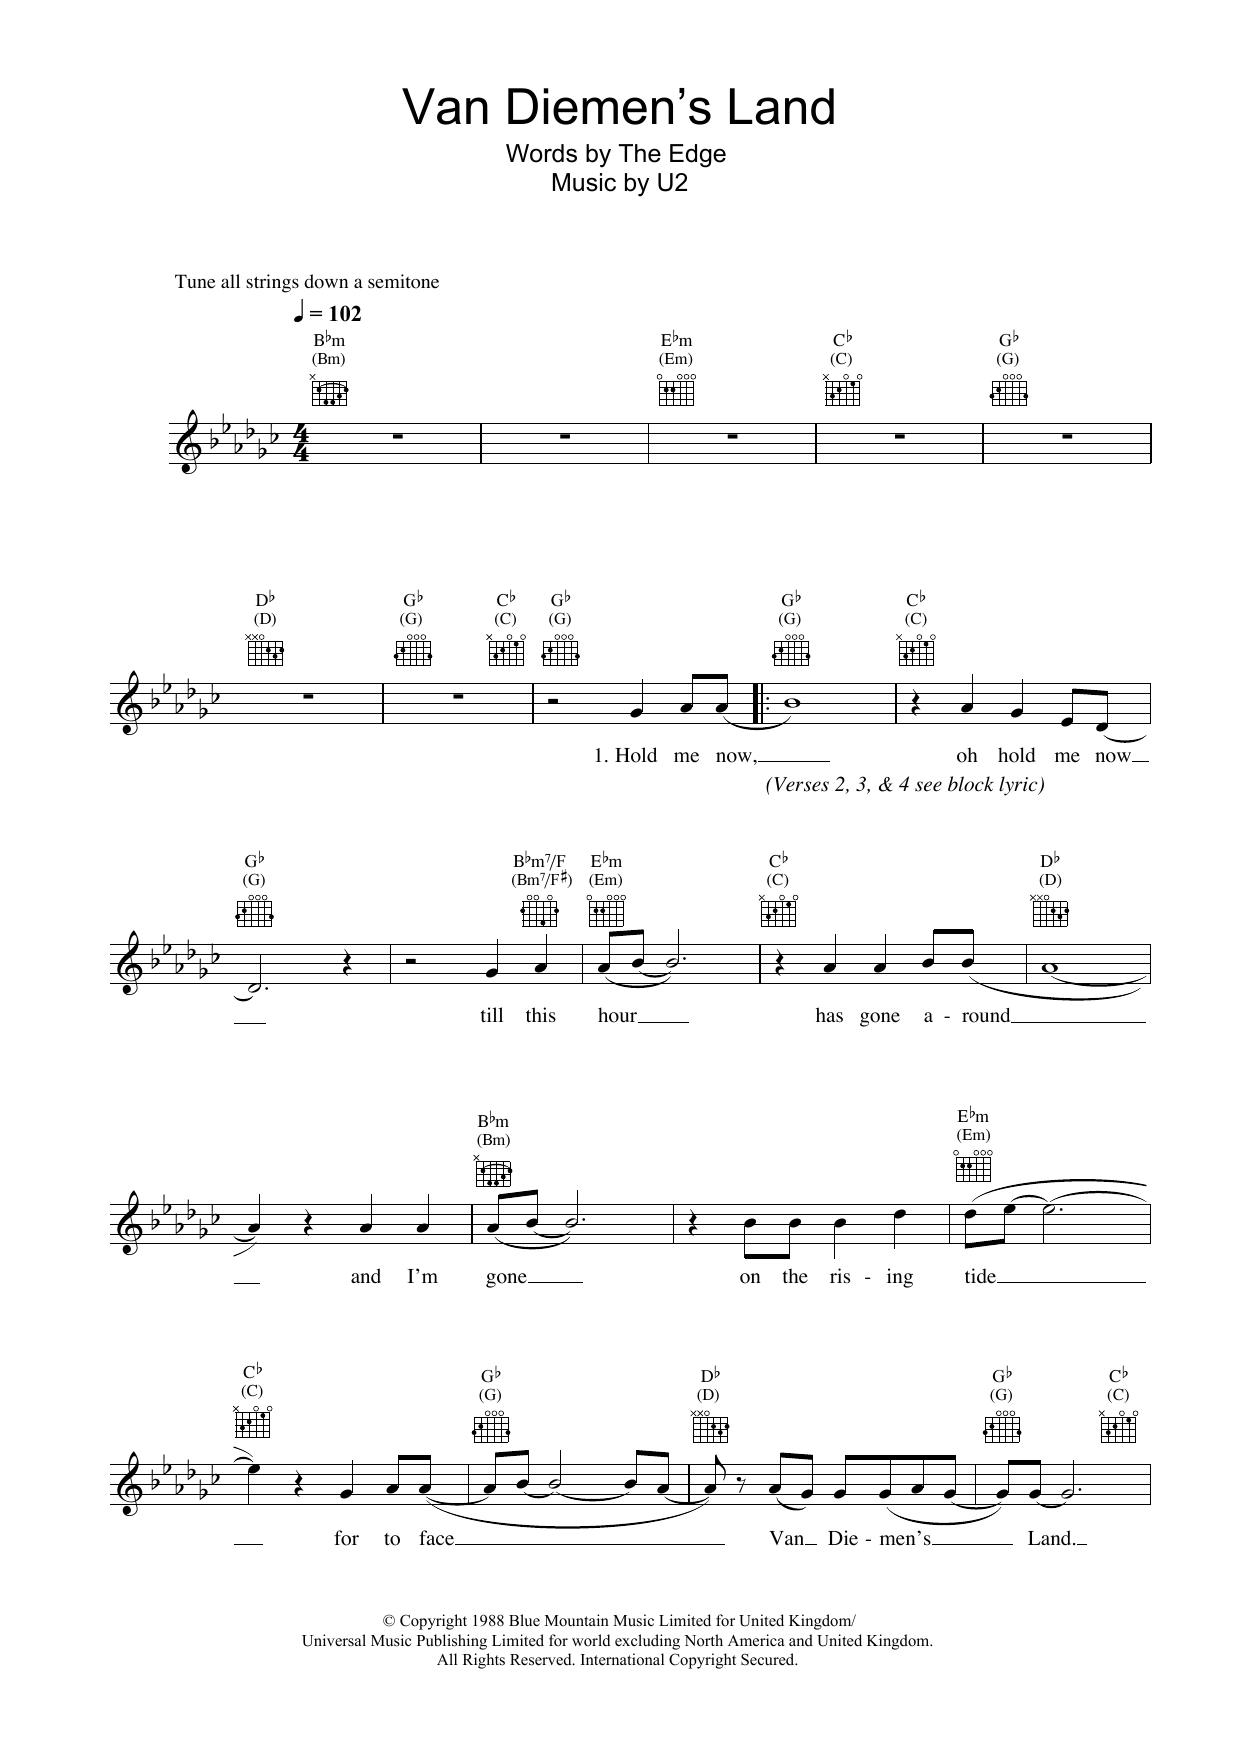 Download U2 Van Diemen's Land Sheet Music and learn how to play Lyrics & Chords PDF digital score in minutes